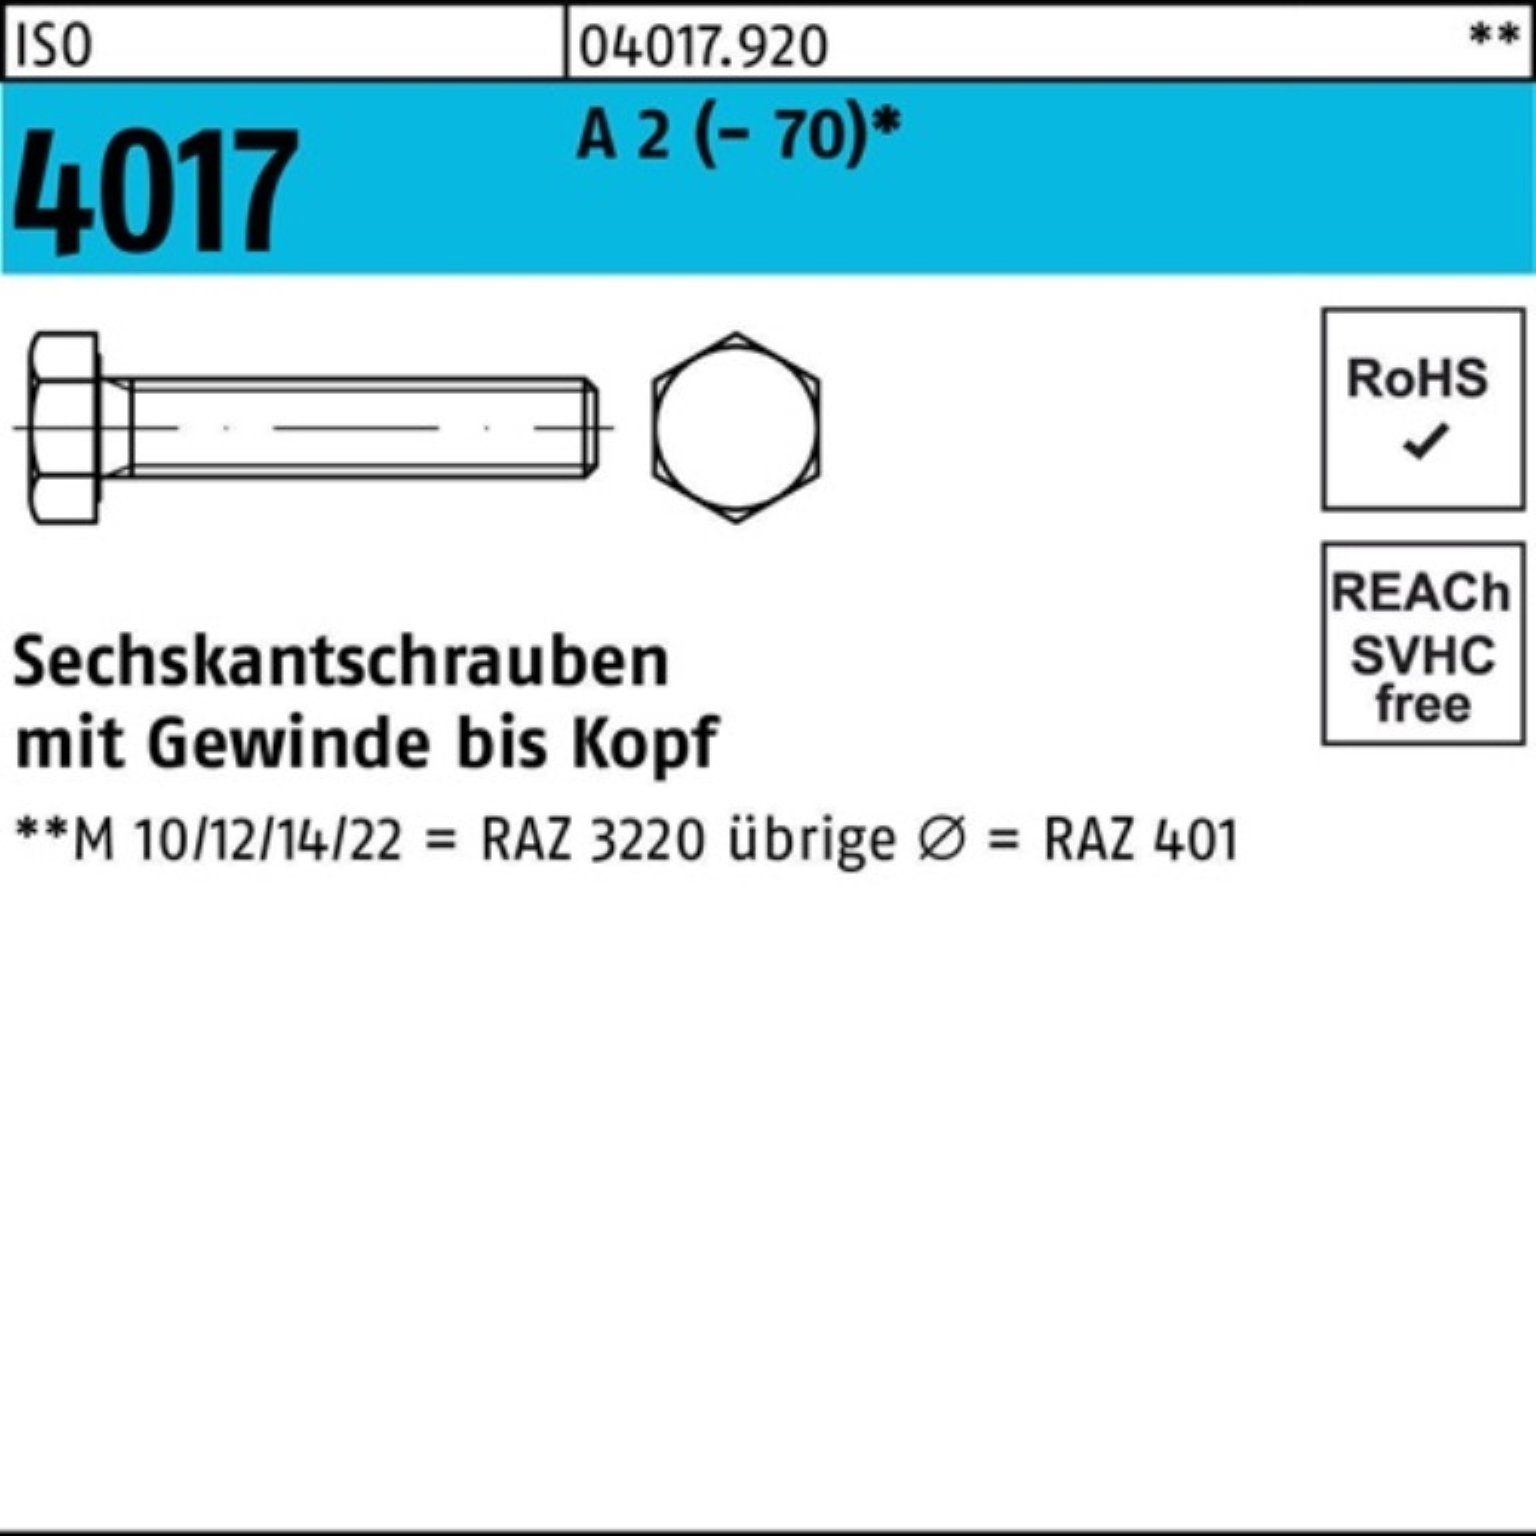 Bufab Sechskantschraube 100er VG Pack Sechskantschraube ISO 2 (70) 30 M12x 4017 A 100 Stück